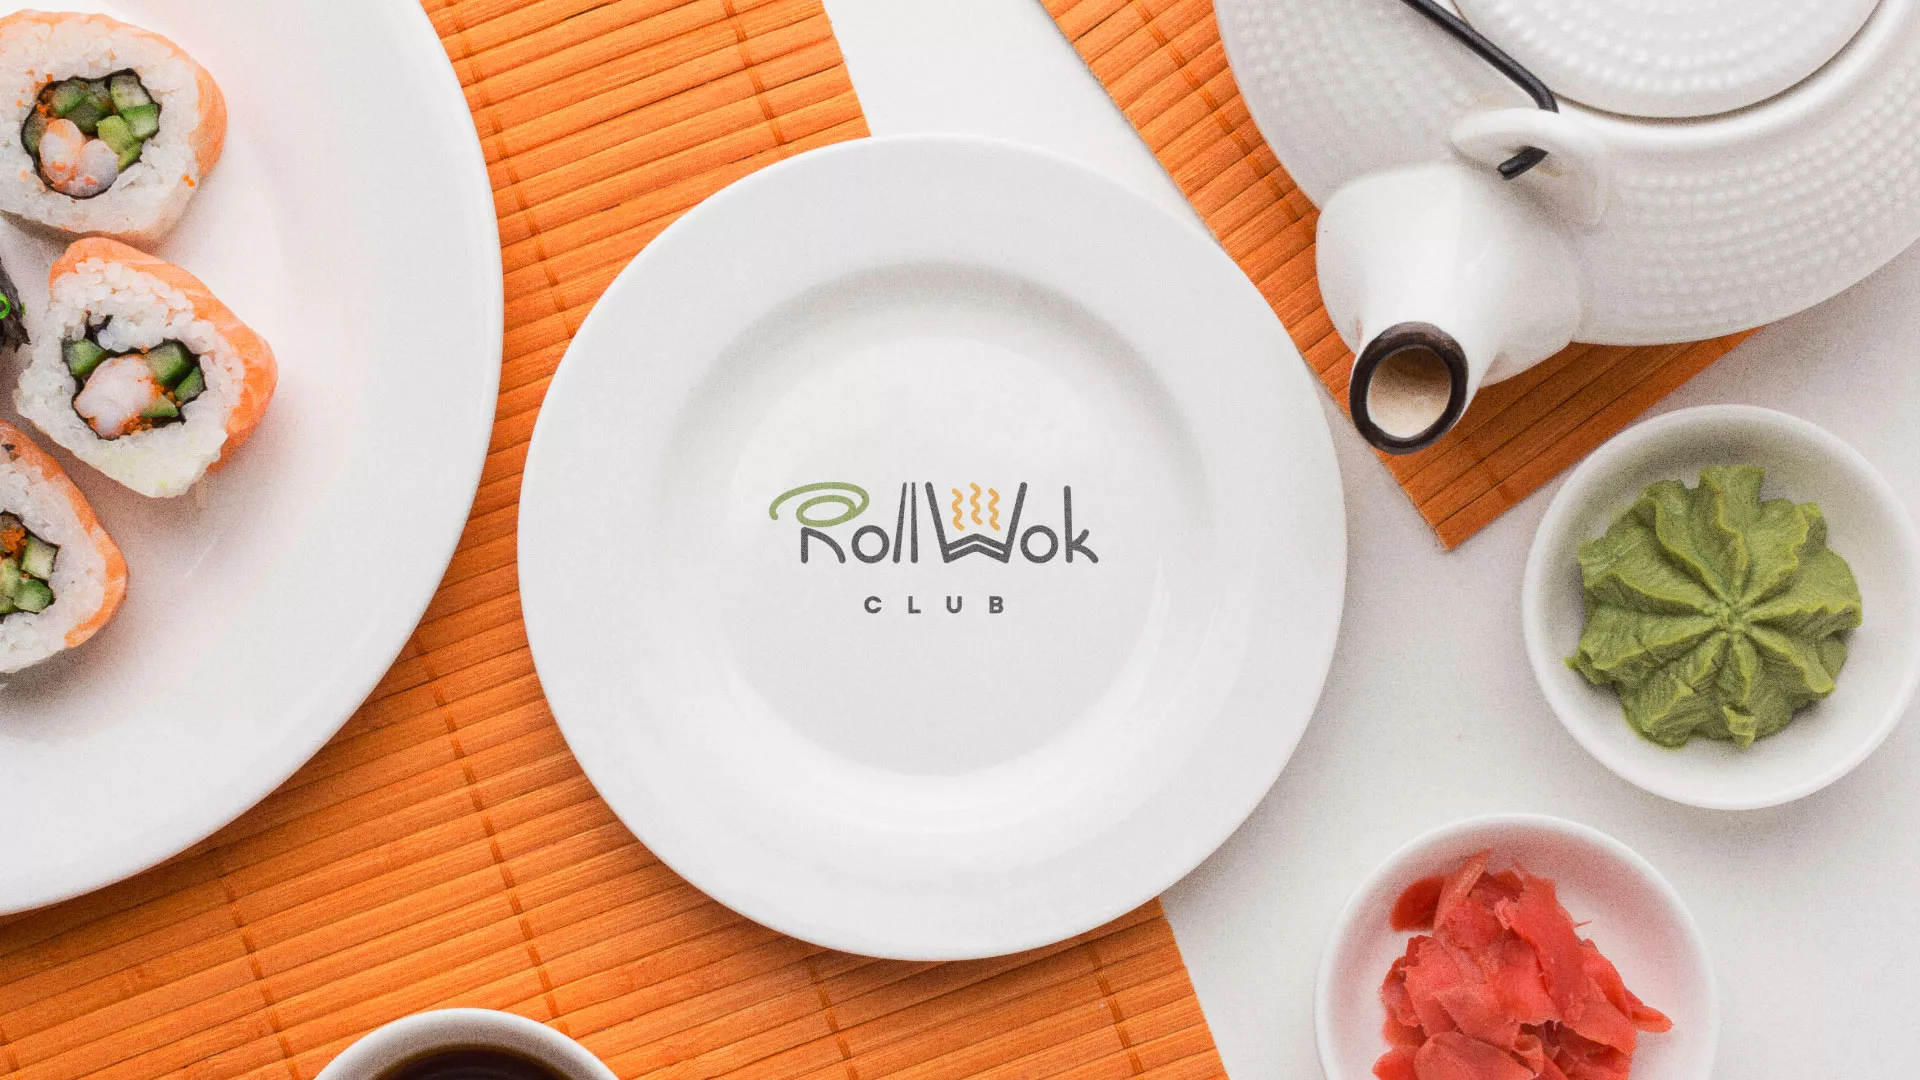 Разработка логотипа и фирменного стиля суши-бара «Roll Wok Club» в Пустошке